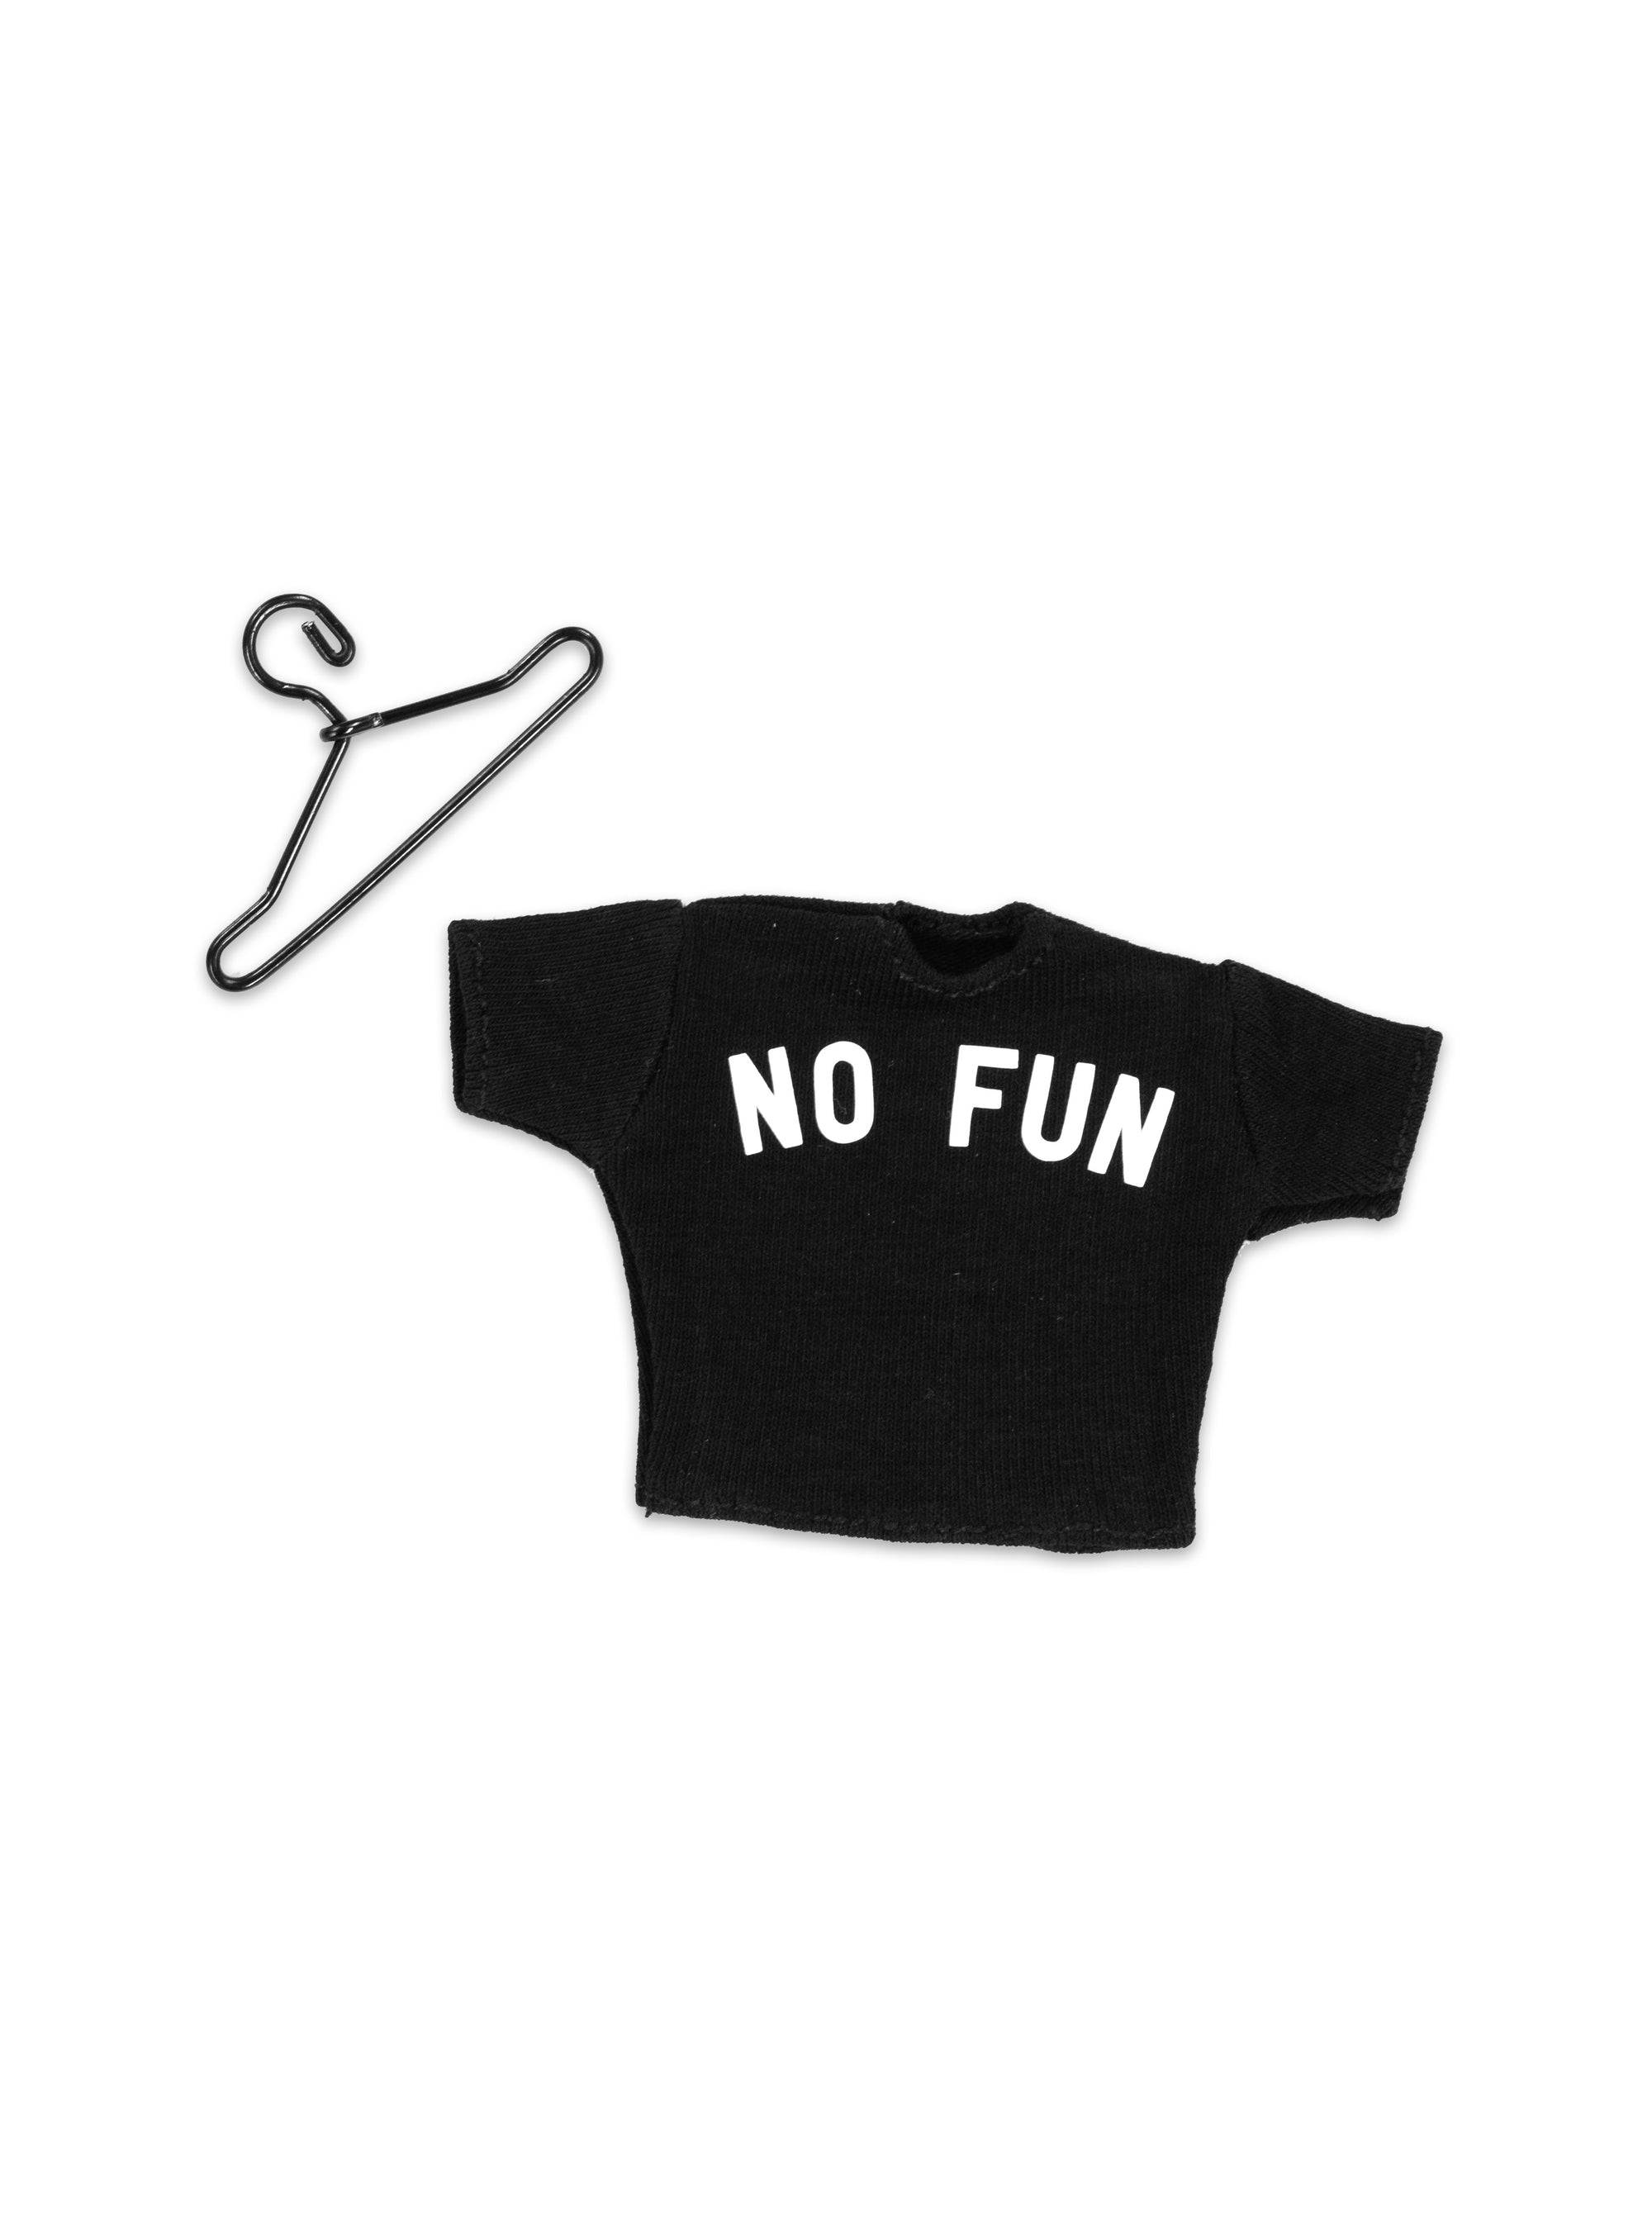 1/12 Scale Miniature "No Fun®" T-Shirt